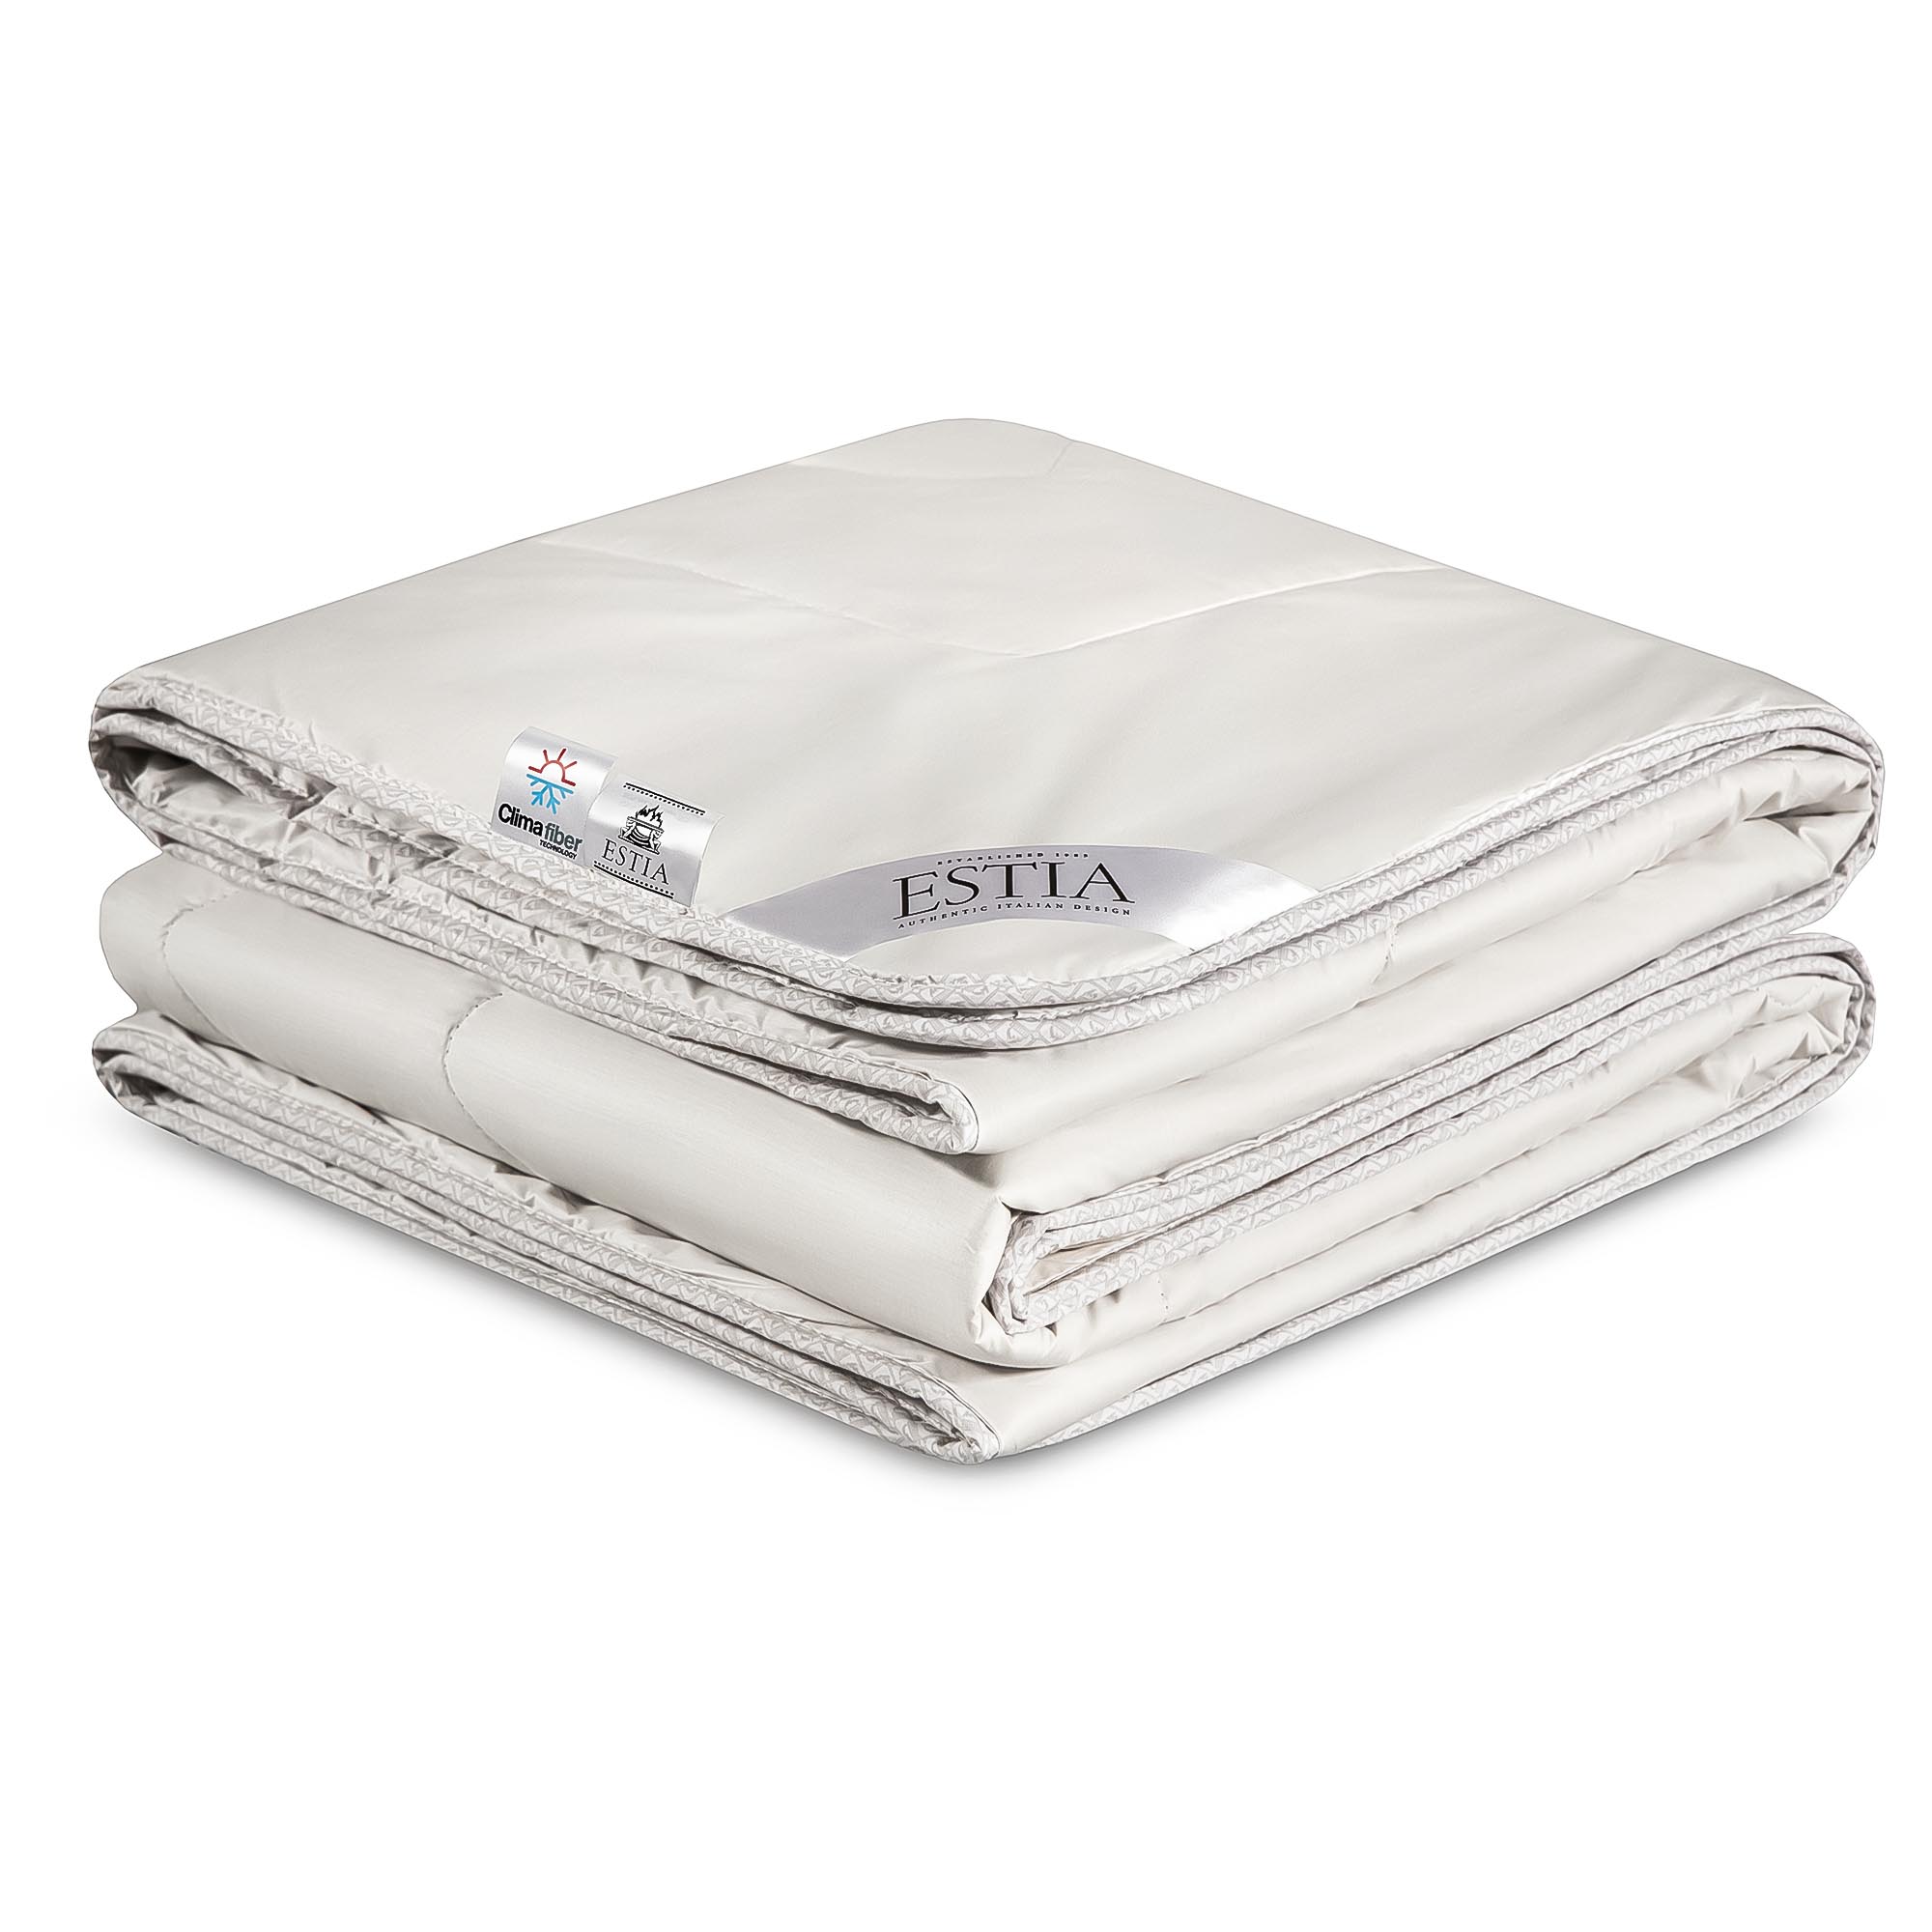 Одеяло Estia Монте Кальво белое 200х210 см (99.62.82.0001) одеяло estia аоста лайт 200x210 белое